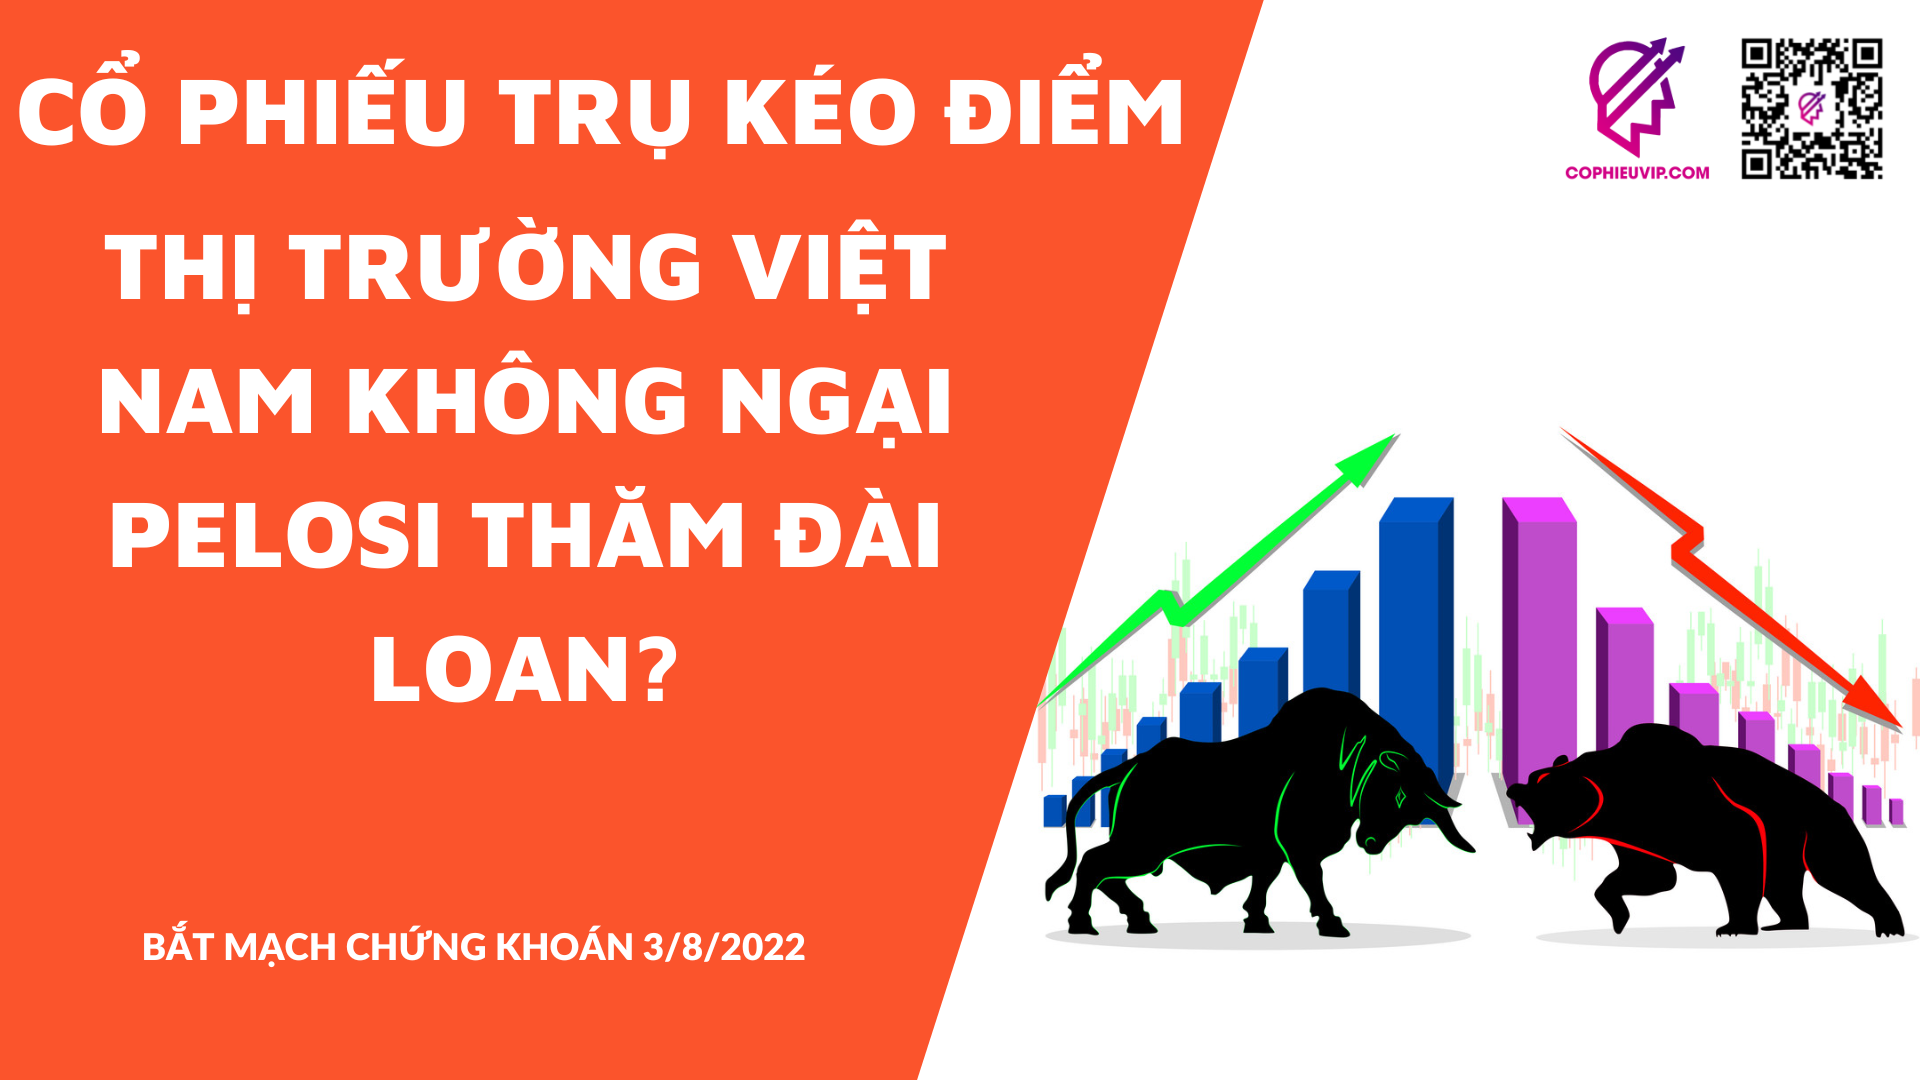 BẮT MẠCH CHỨNG KHOÁN 3/8/2022: Cổ phiếu trụ kéo điểm. Thị trường Việt Nam không ngại Pelosi thăm Đài Loan?